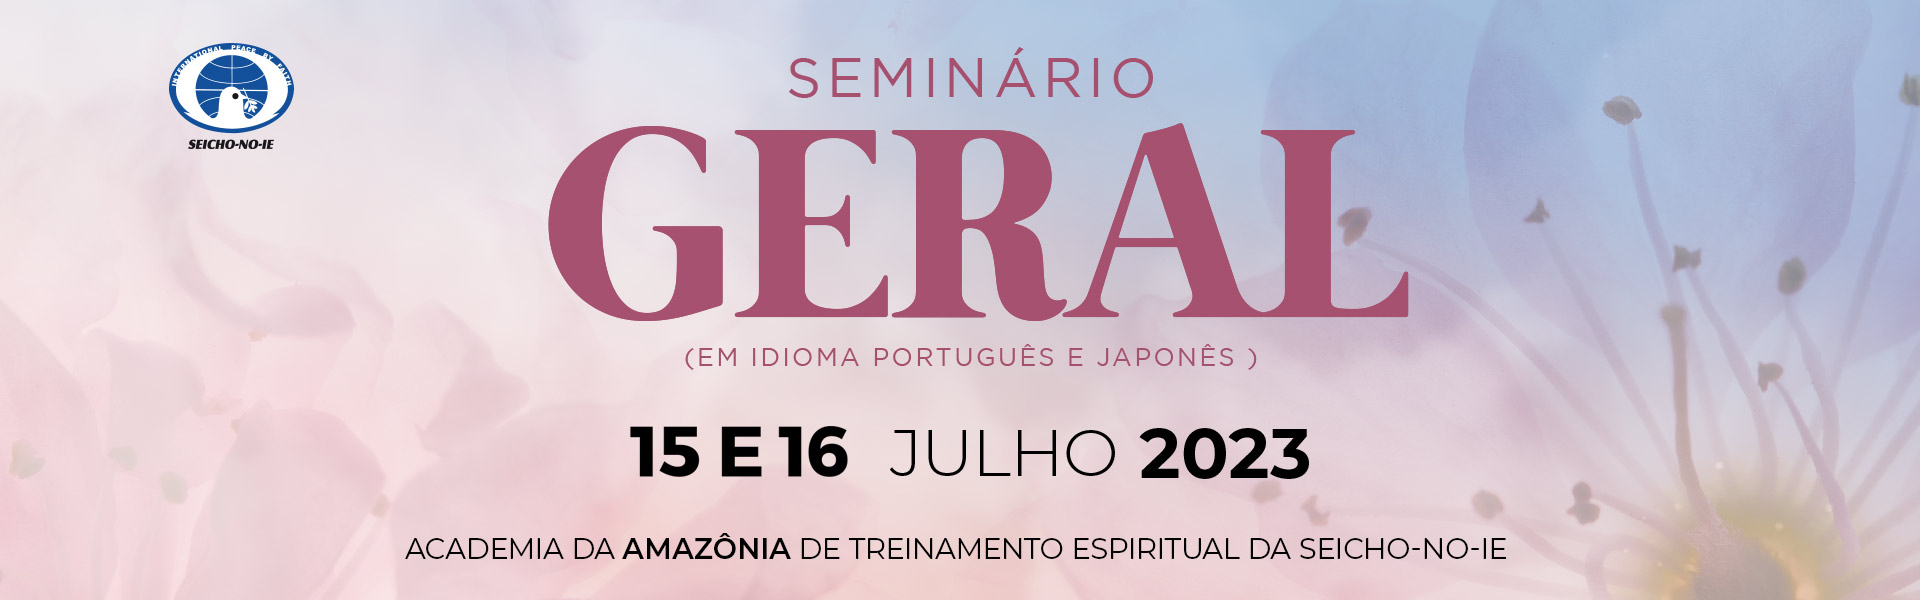 topo portal seminario japones portugues amazonia Seminário Geral em idioma português e japonês